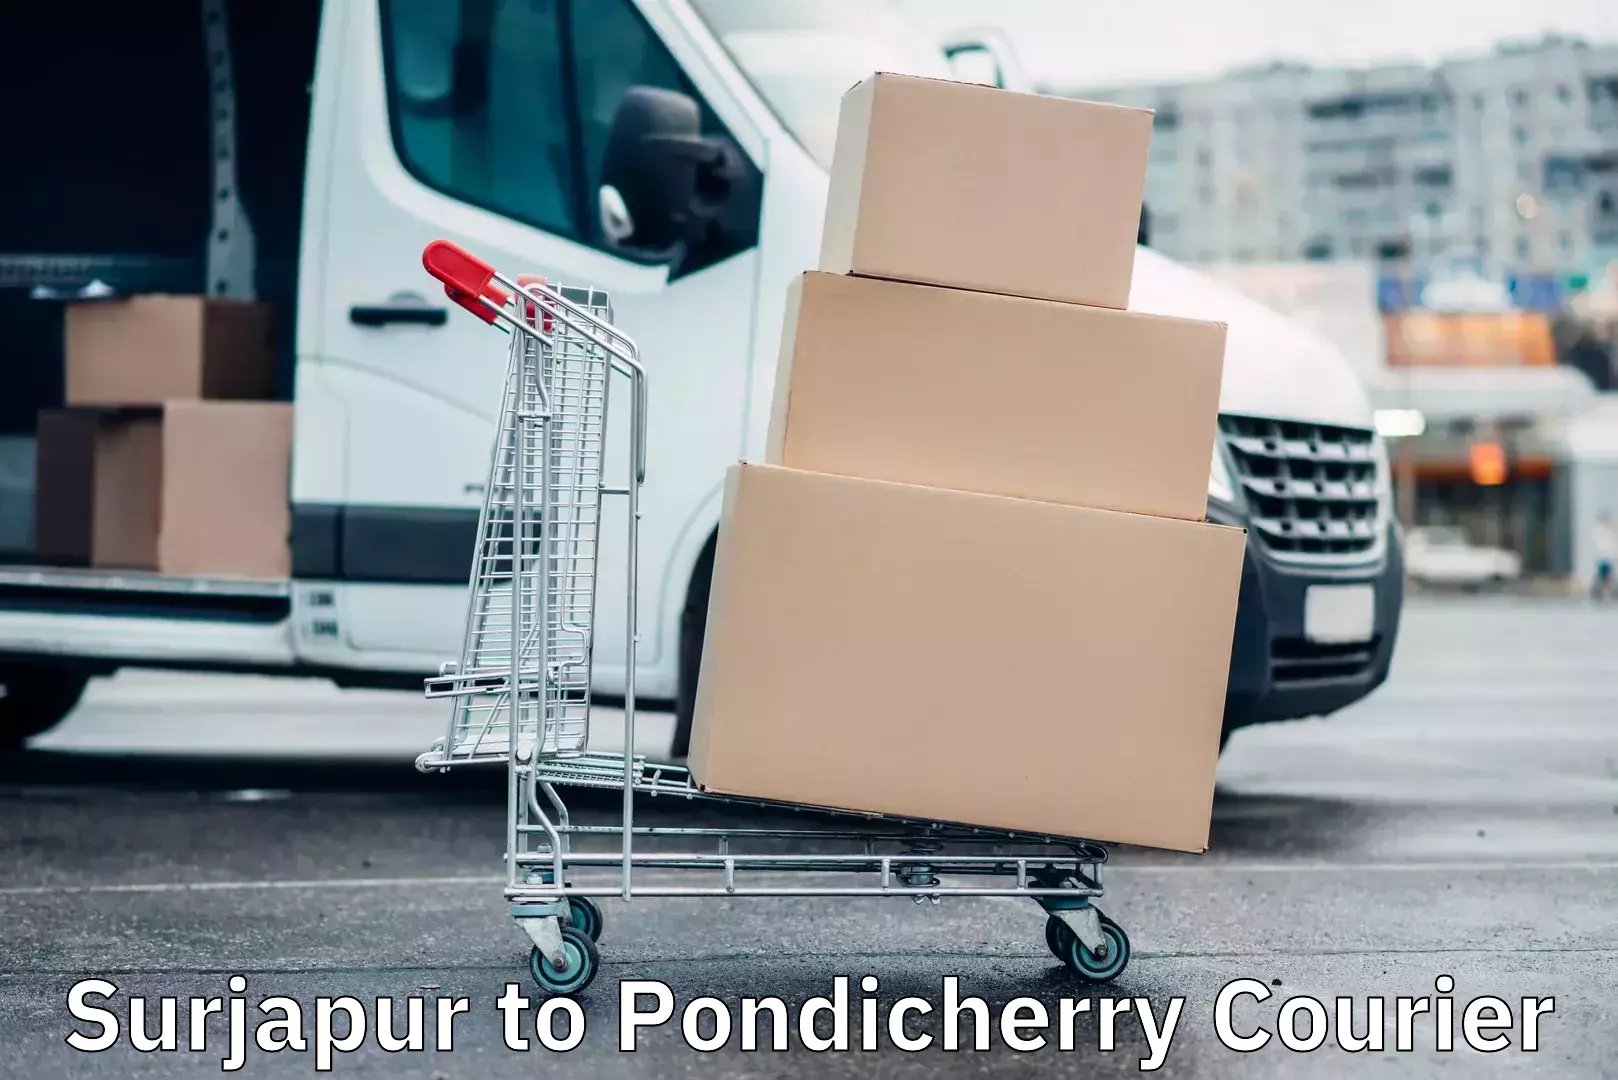 Reliable parcel services Surjapur to Pondicherry